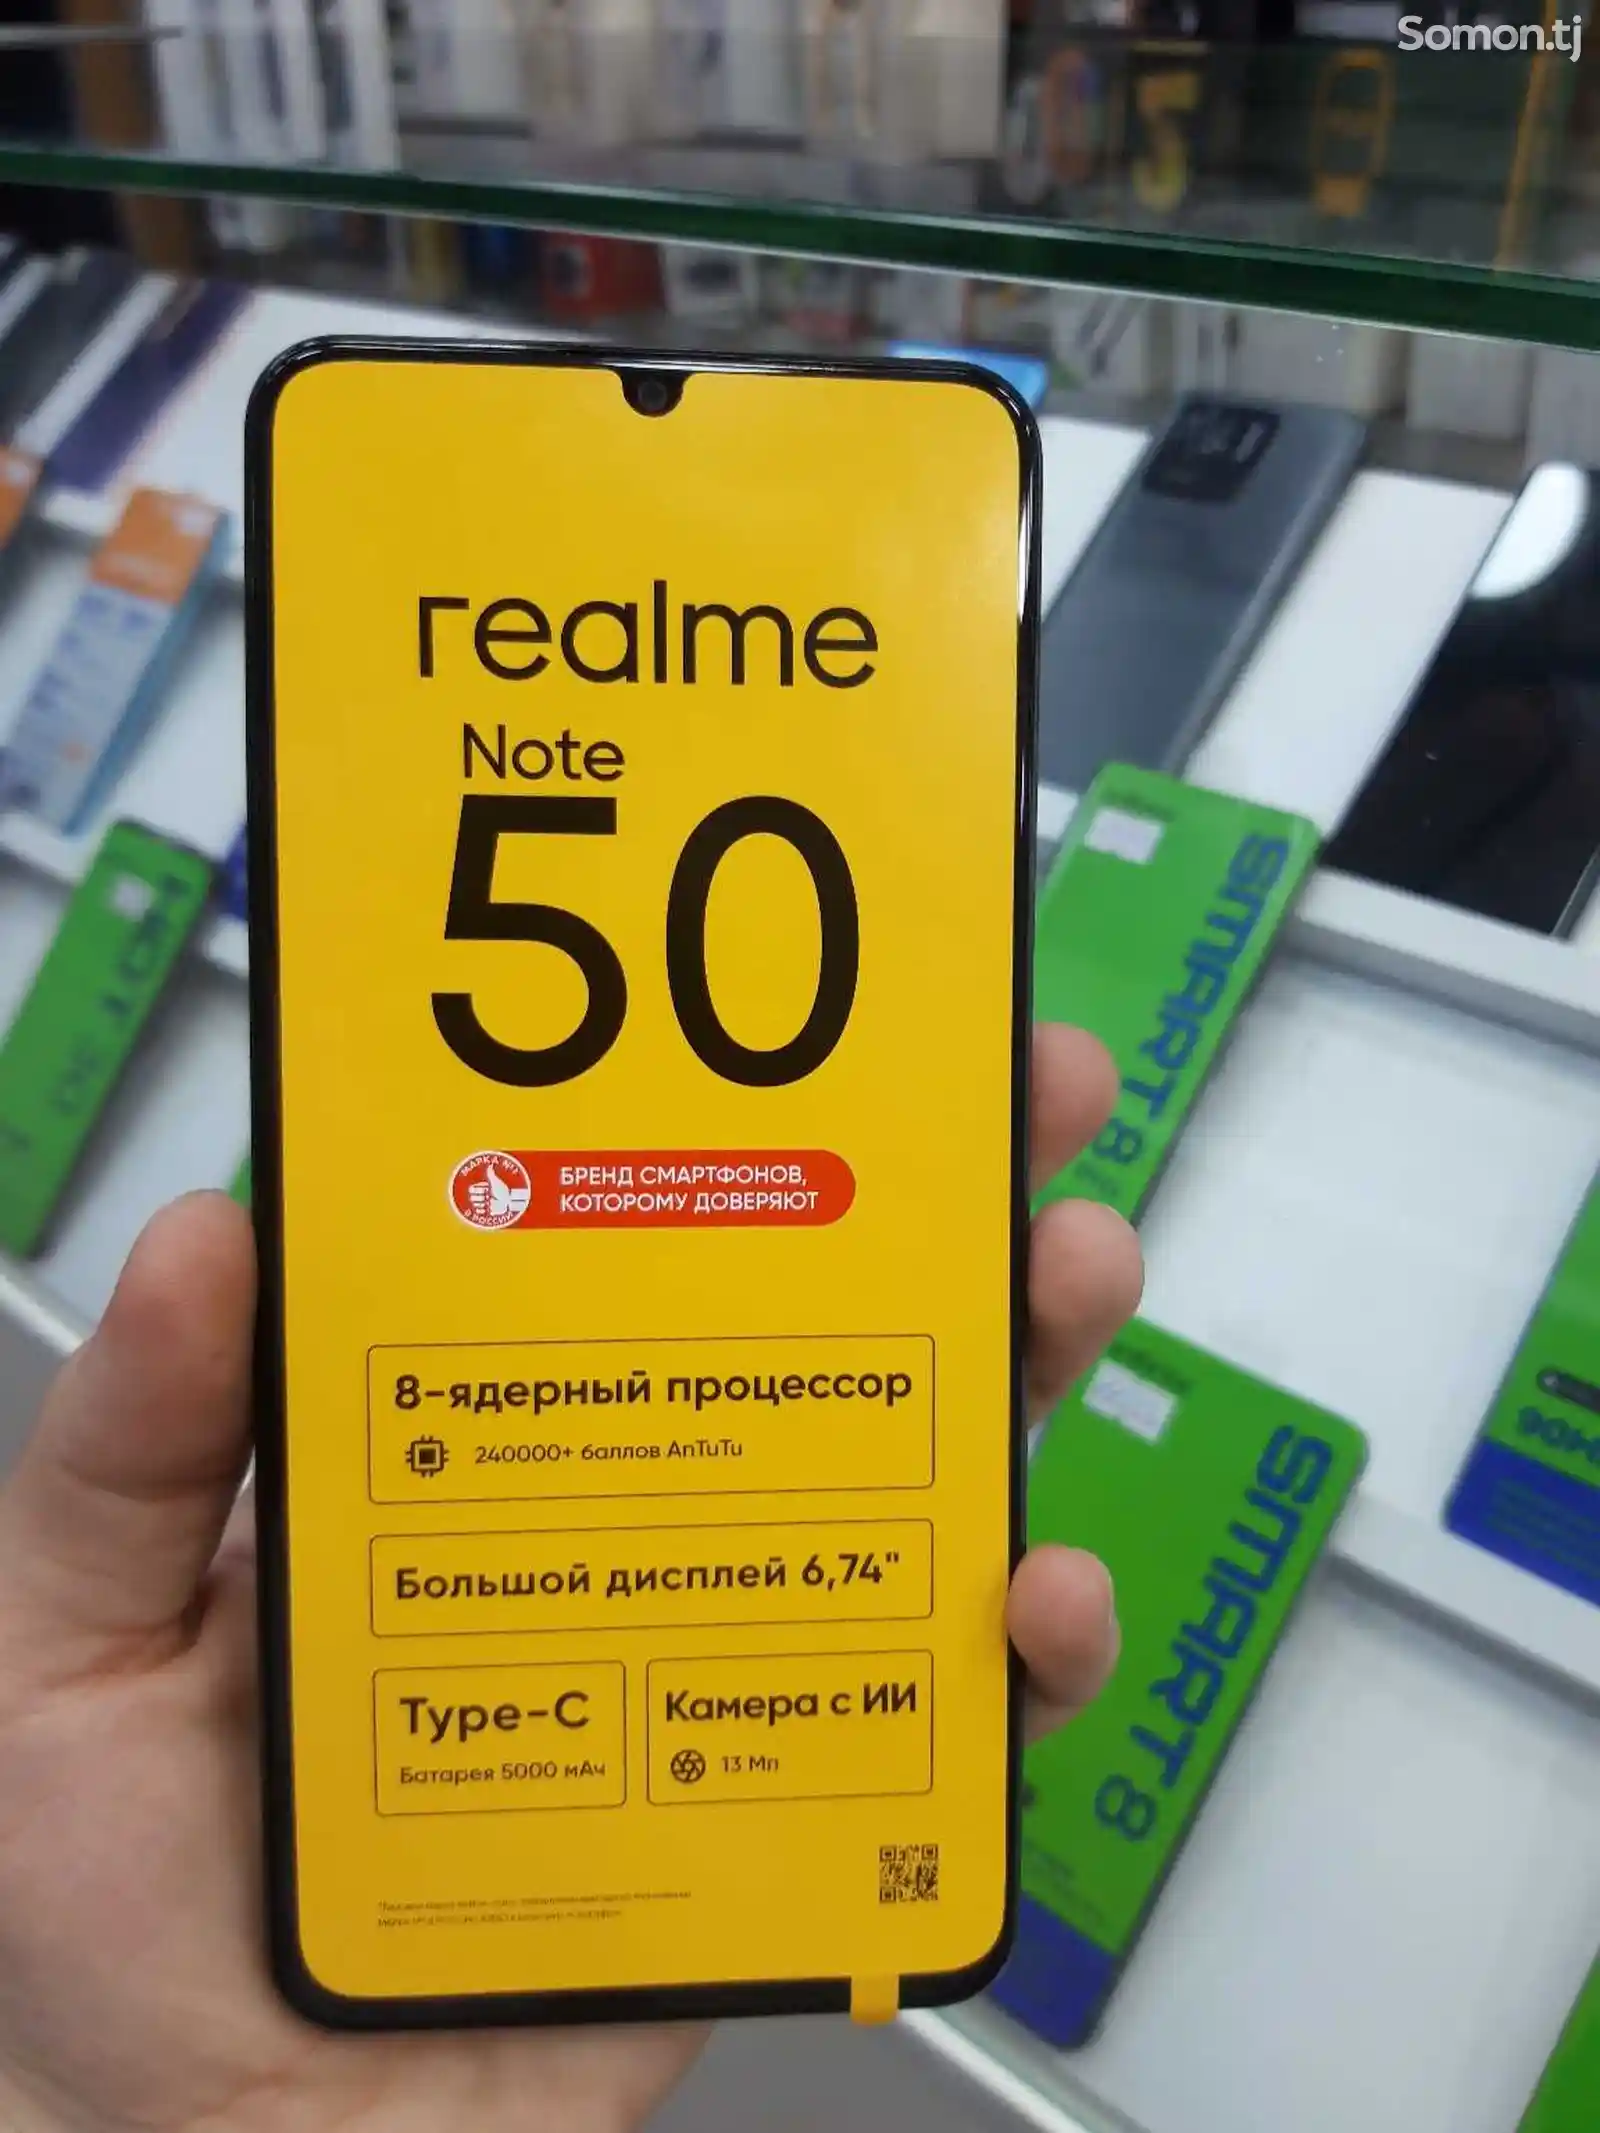 Realme Note 50-2